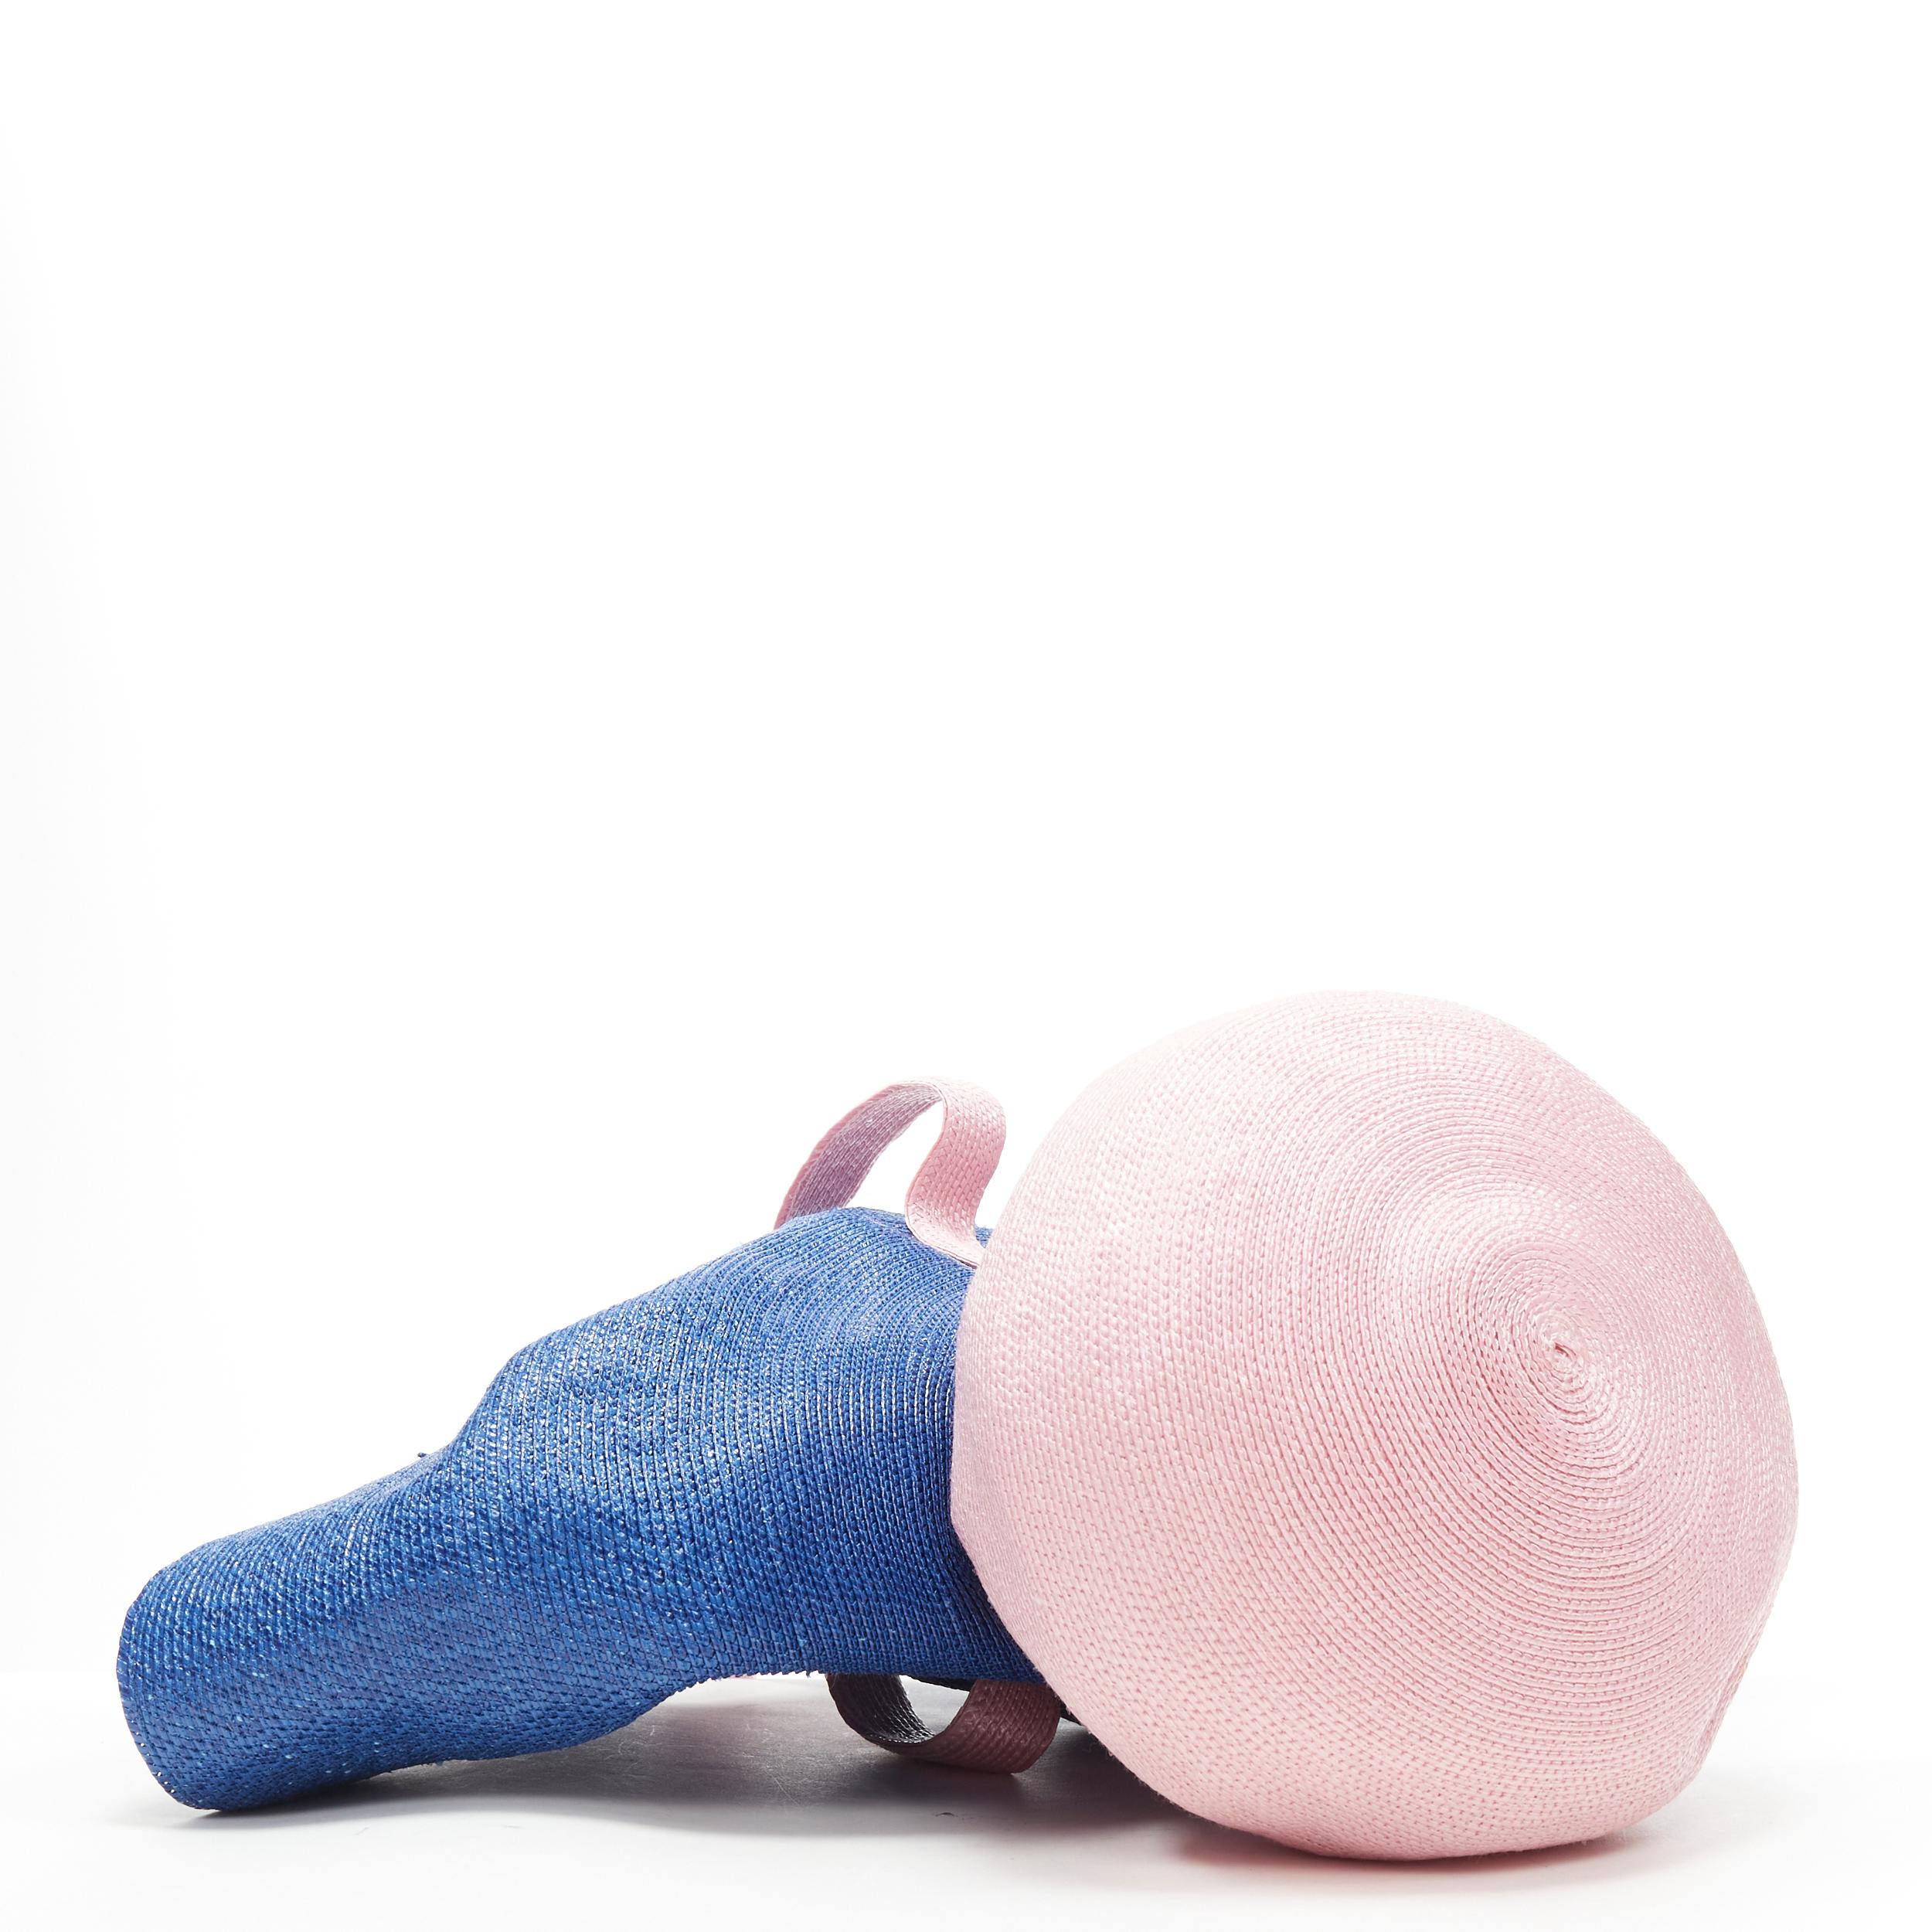 new ROSIE ASSOULIN Jug sculptural pink blue flared raffia woven basket bag For Sale 1